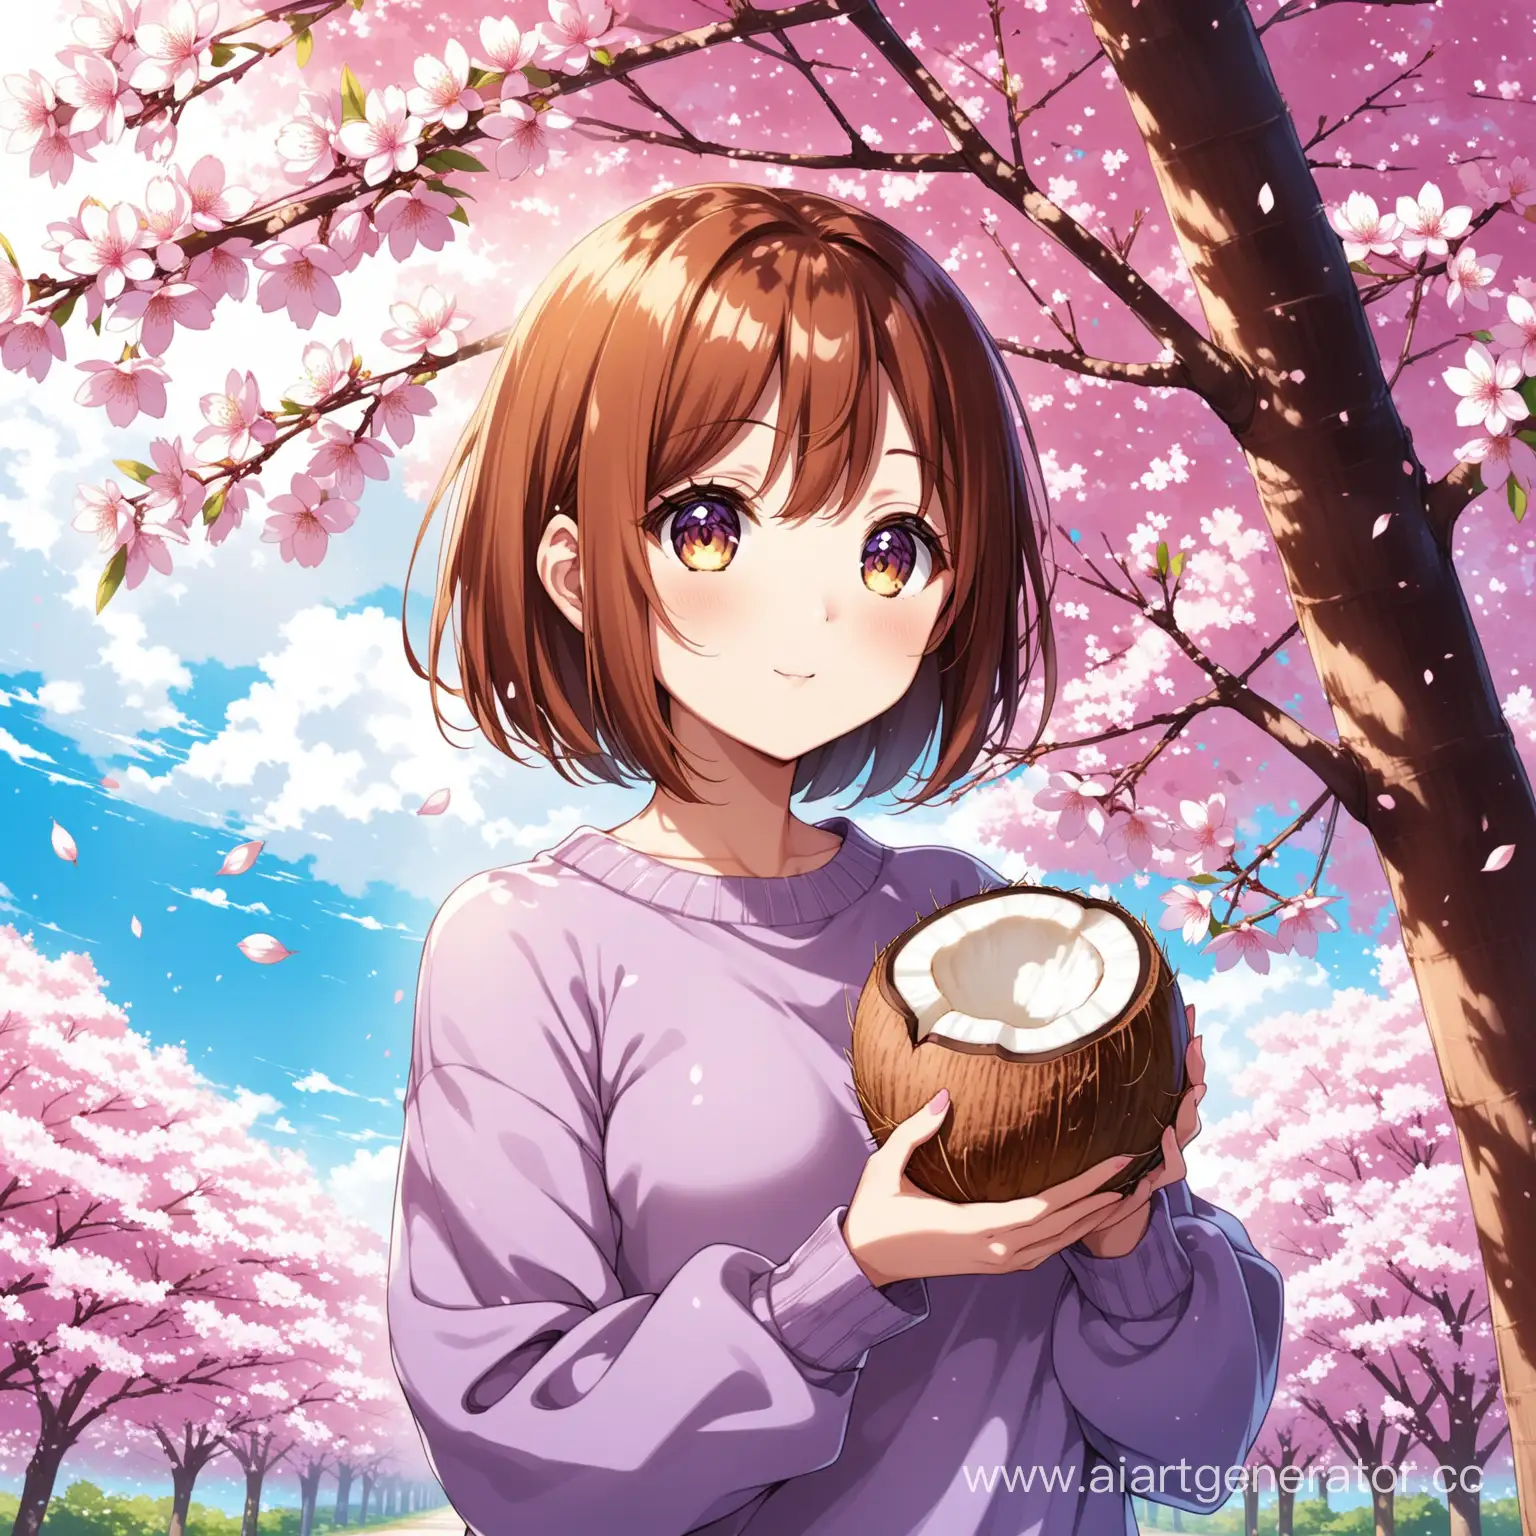 аниме девушка с каштановым каре стоит на фоне сакур с кокосом в руках в фиолетовой кофте